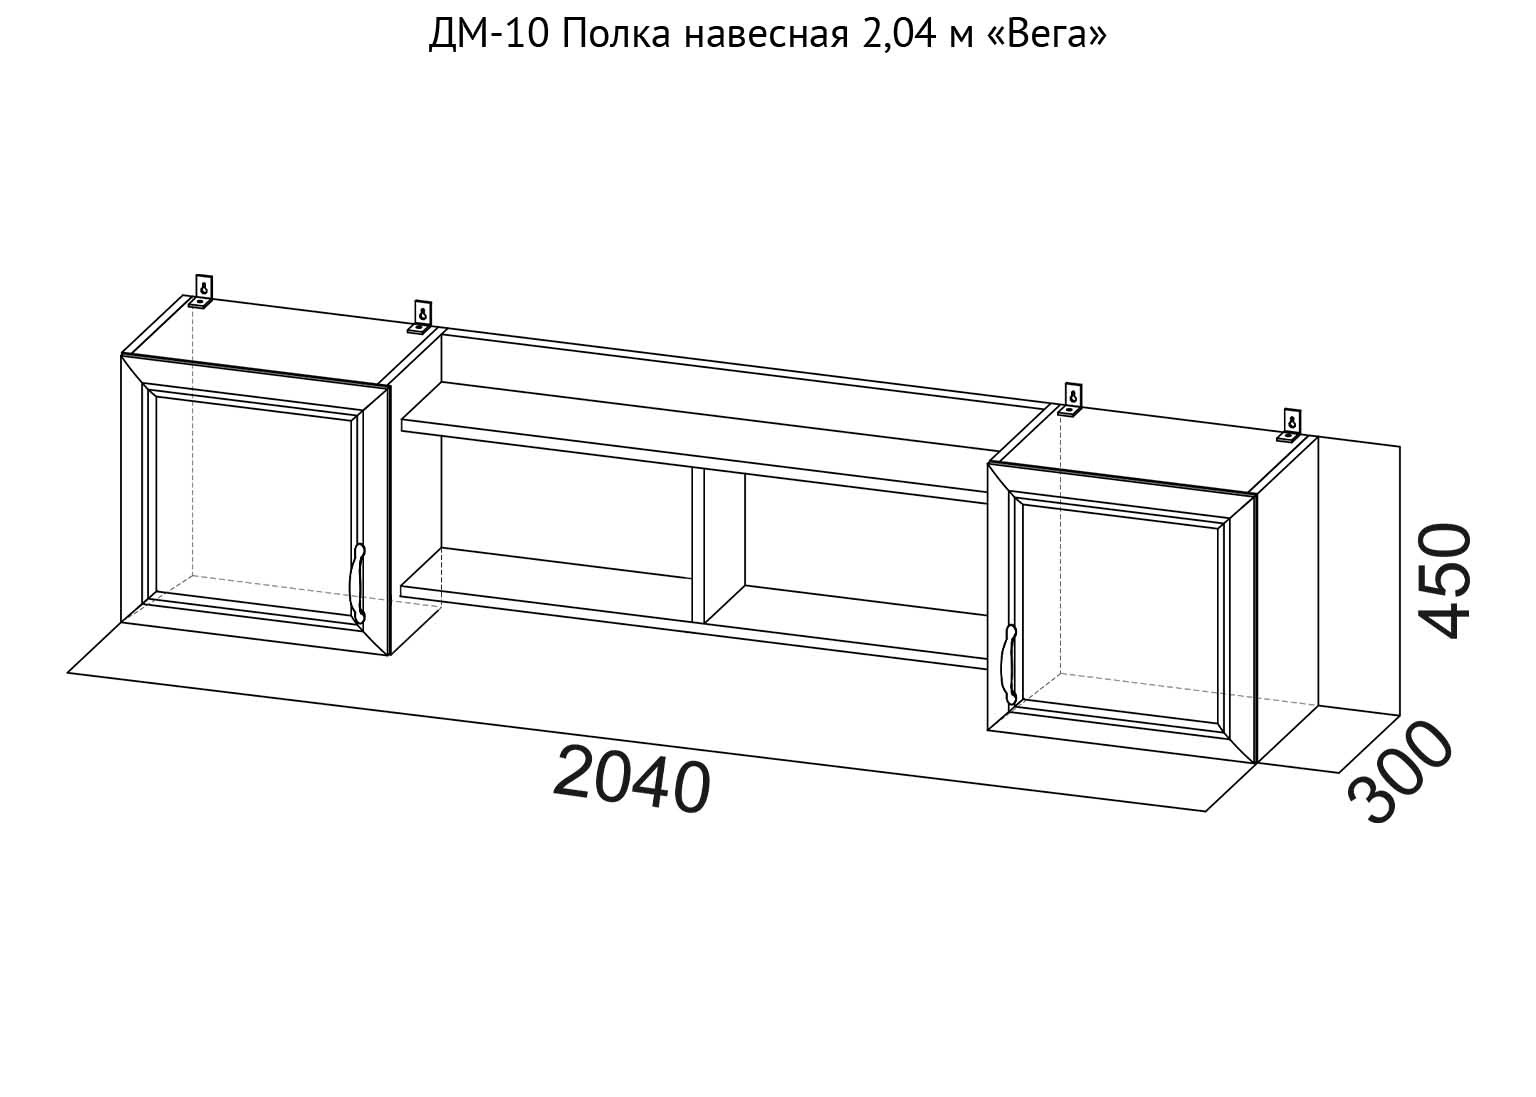 ДМ-10 Полка навесная 2,04 м Вега схема SV-Мебель